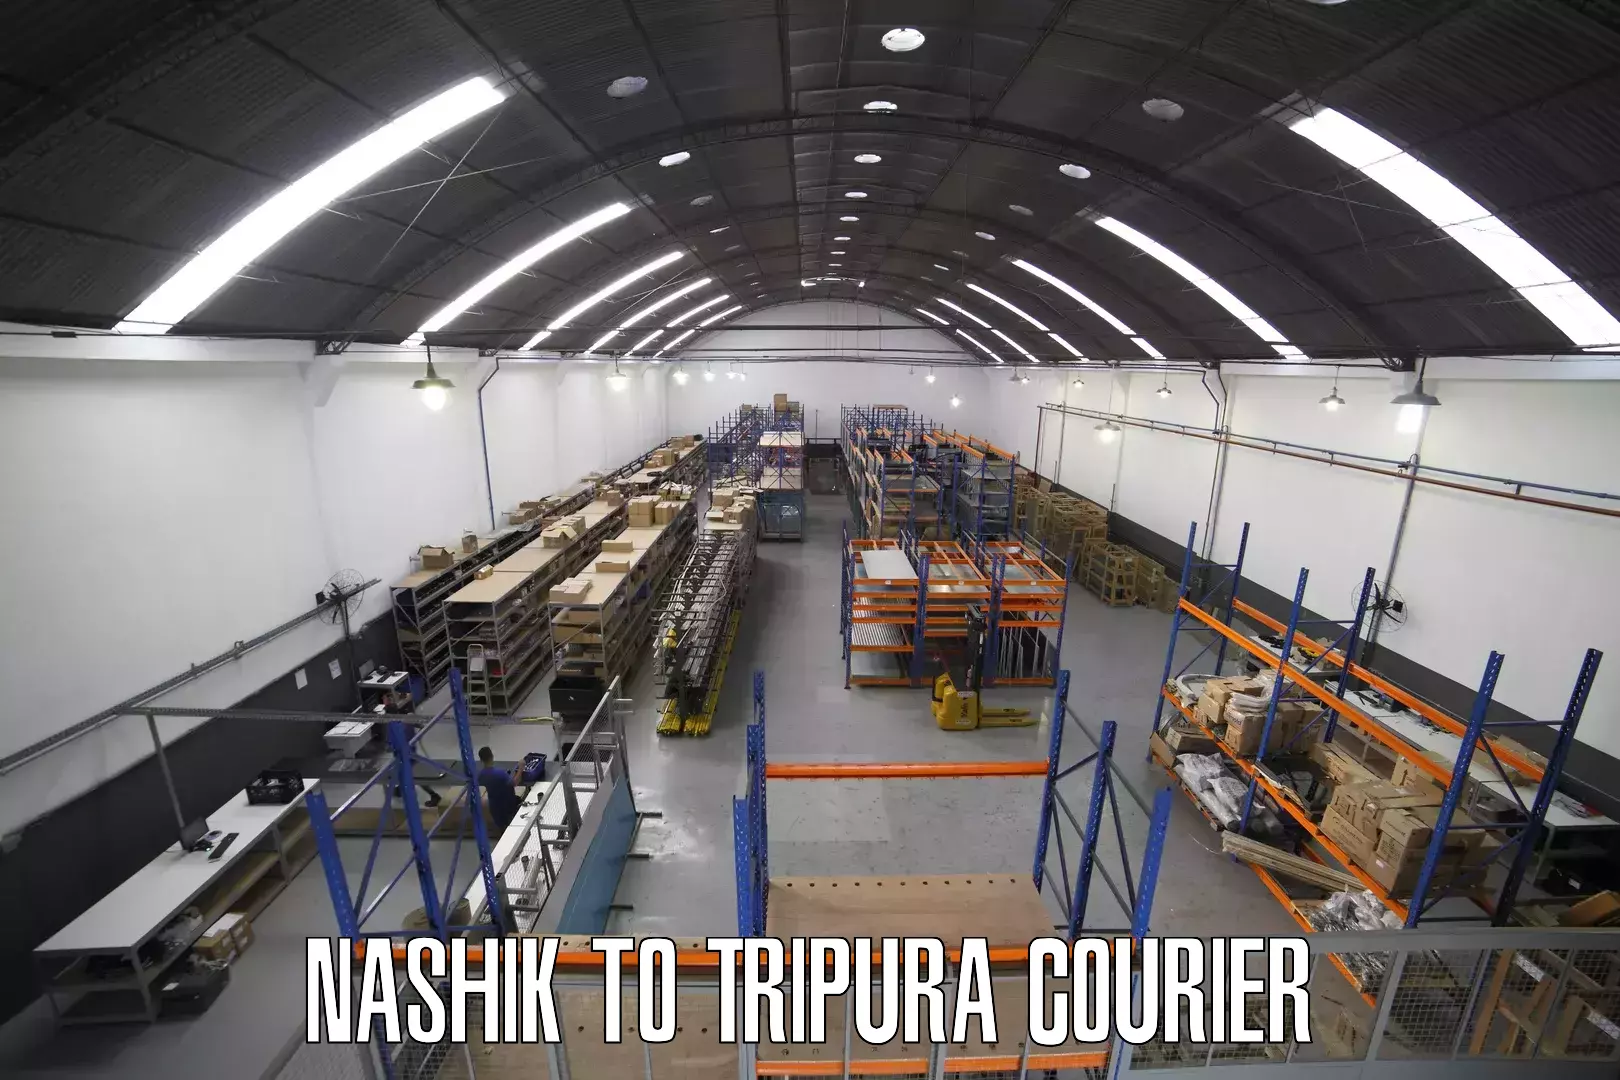 Cost-effective courier options Nashik to IIIT Agartala